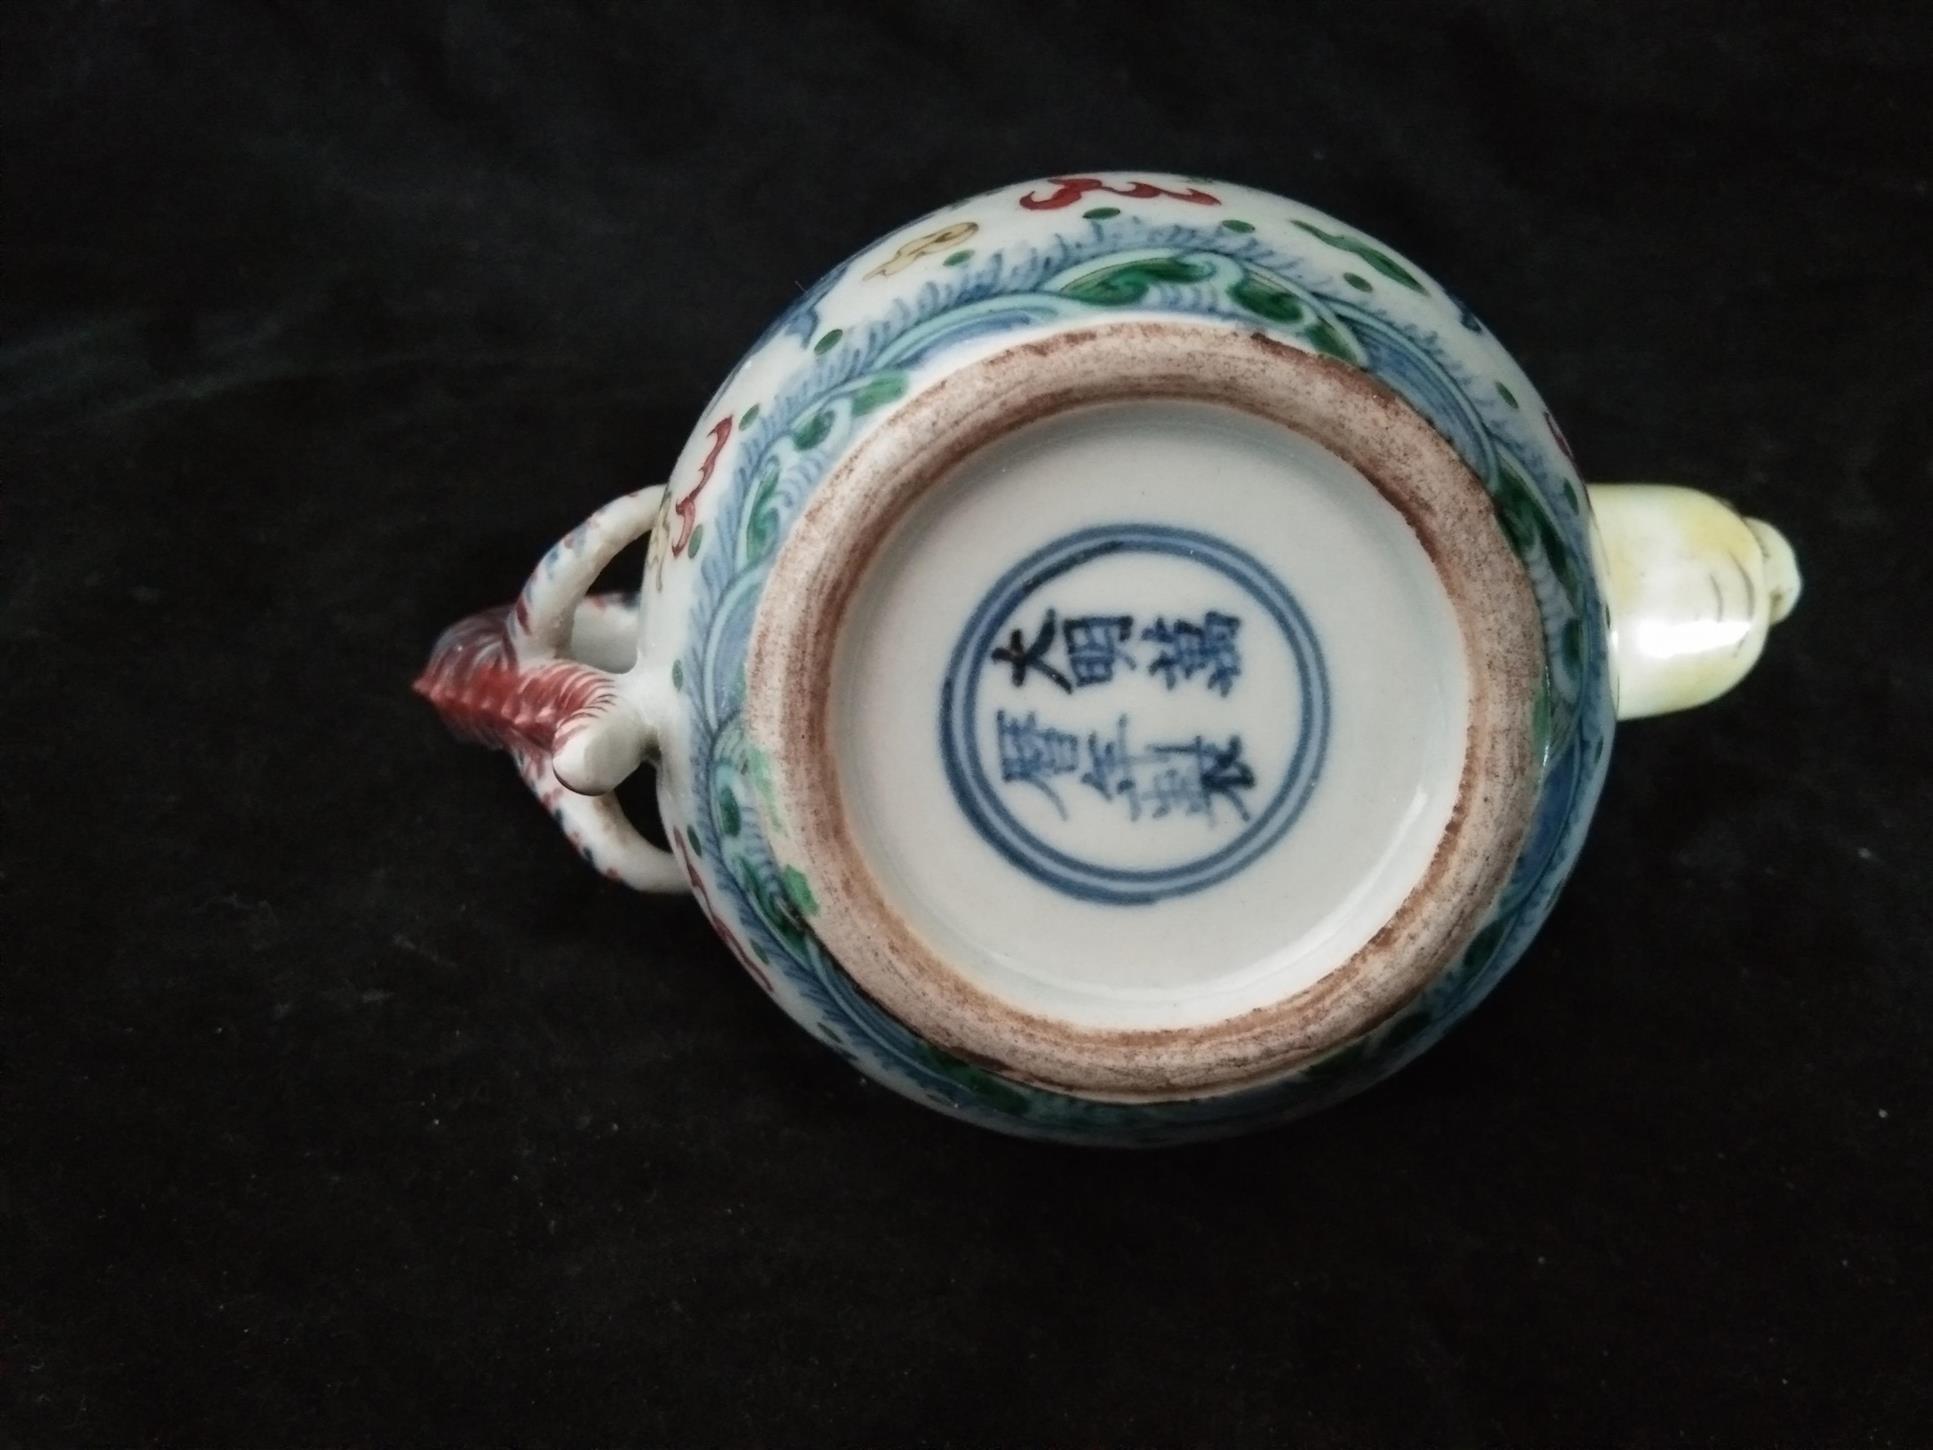 无锡茶壶龙把无痕修复流程 南京美瓷工艺品有限公司